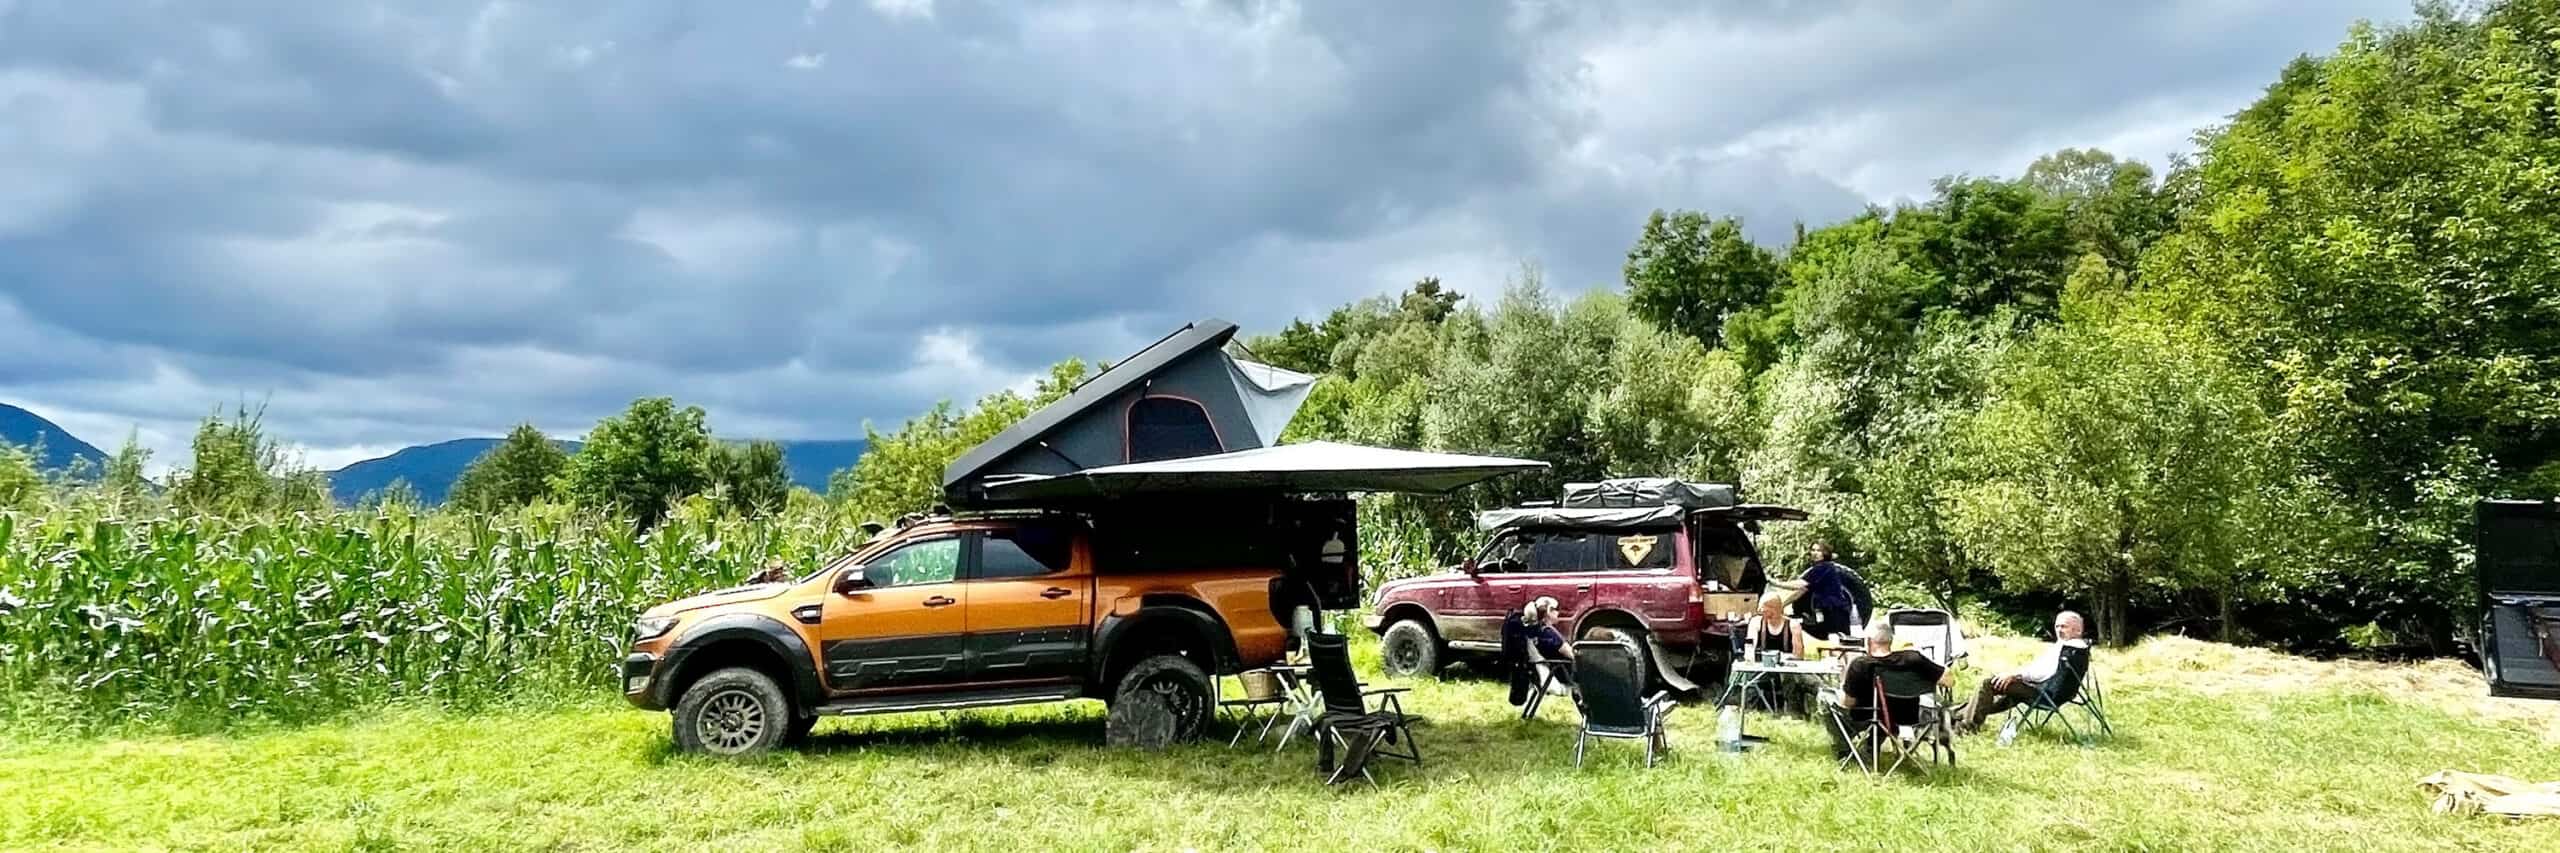 camping-romania-Transsylvanien, Ecocamping am Fluss in Rumänien, Siebenbürgen